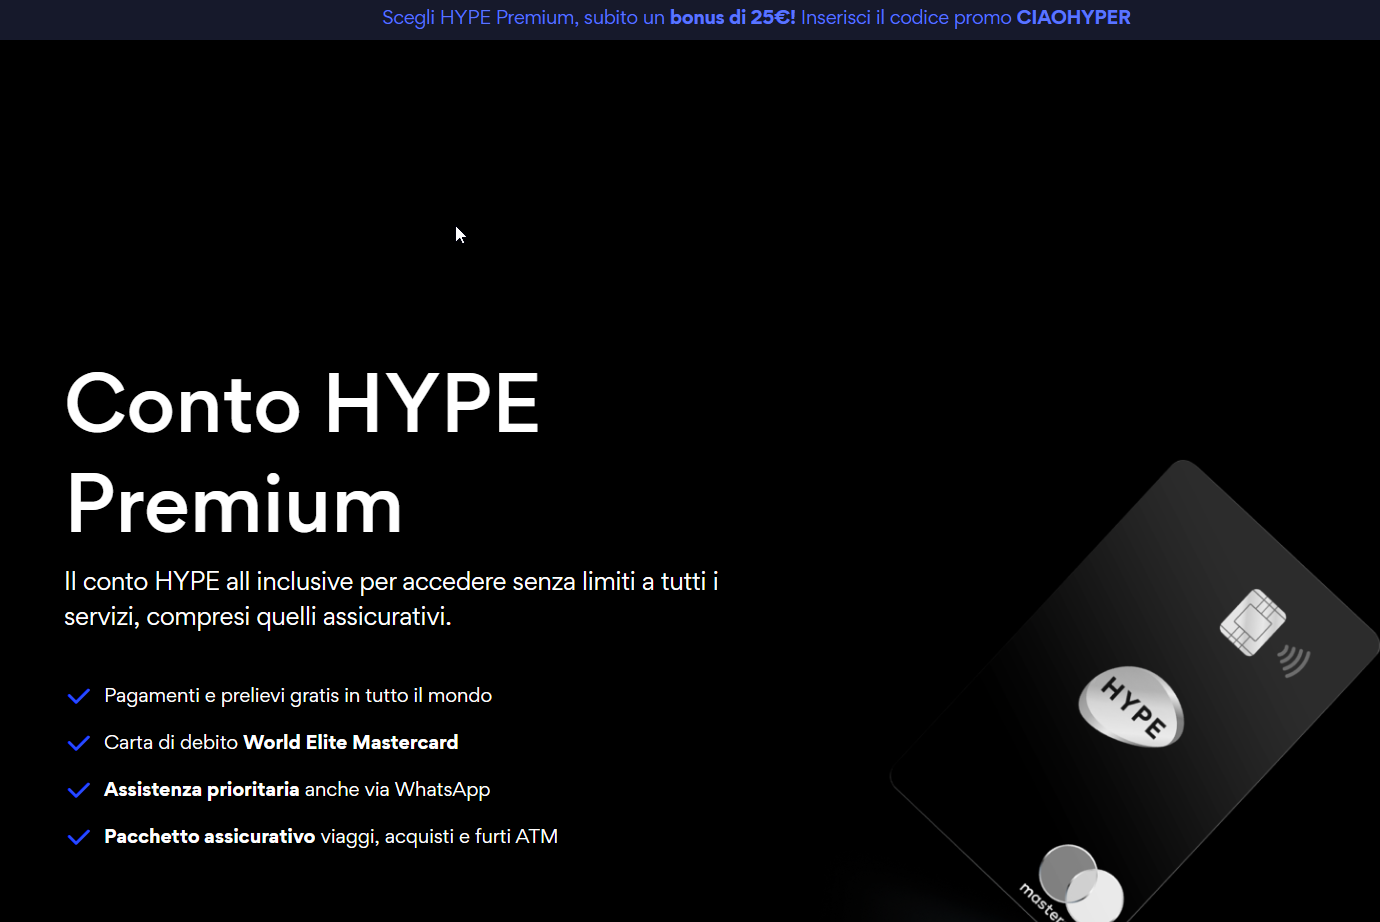 HYPE Premium